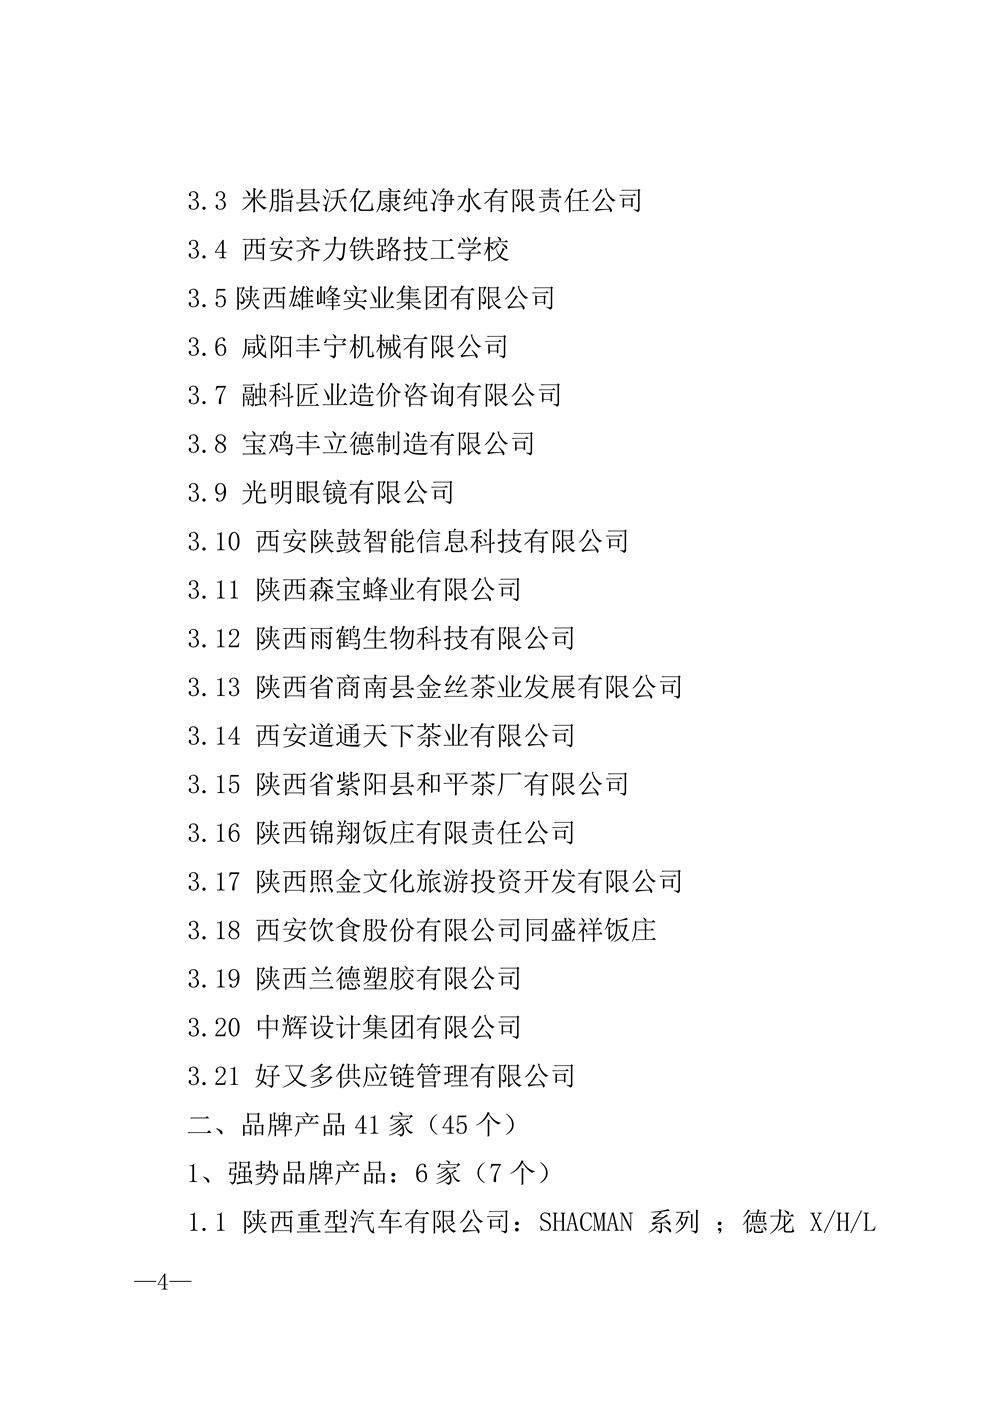 22-52陕西省2021年度品牌评选公示通知_页面_04.jpg